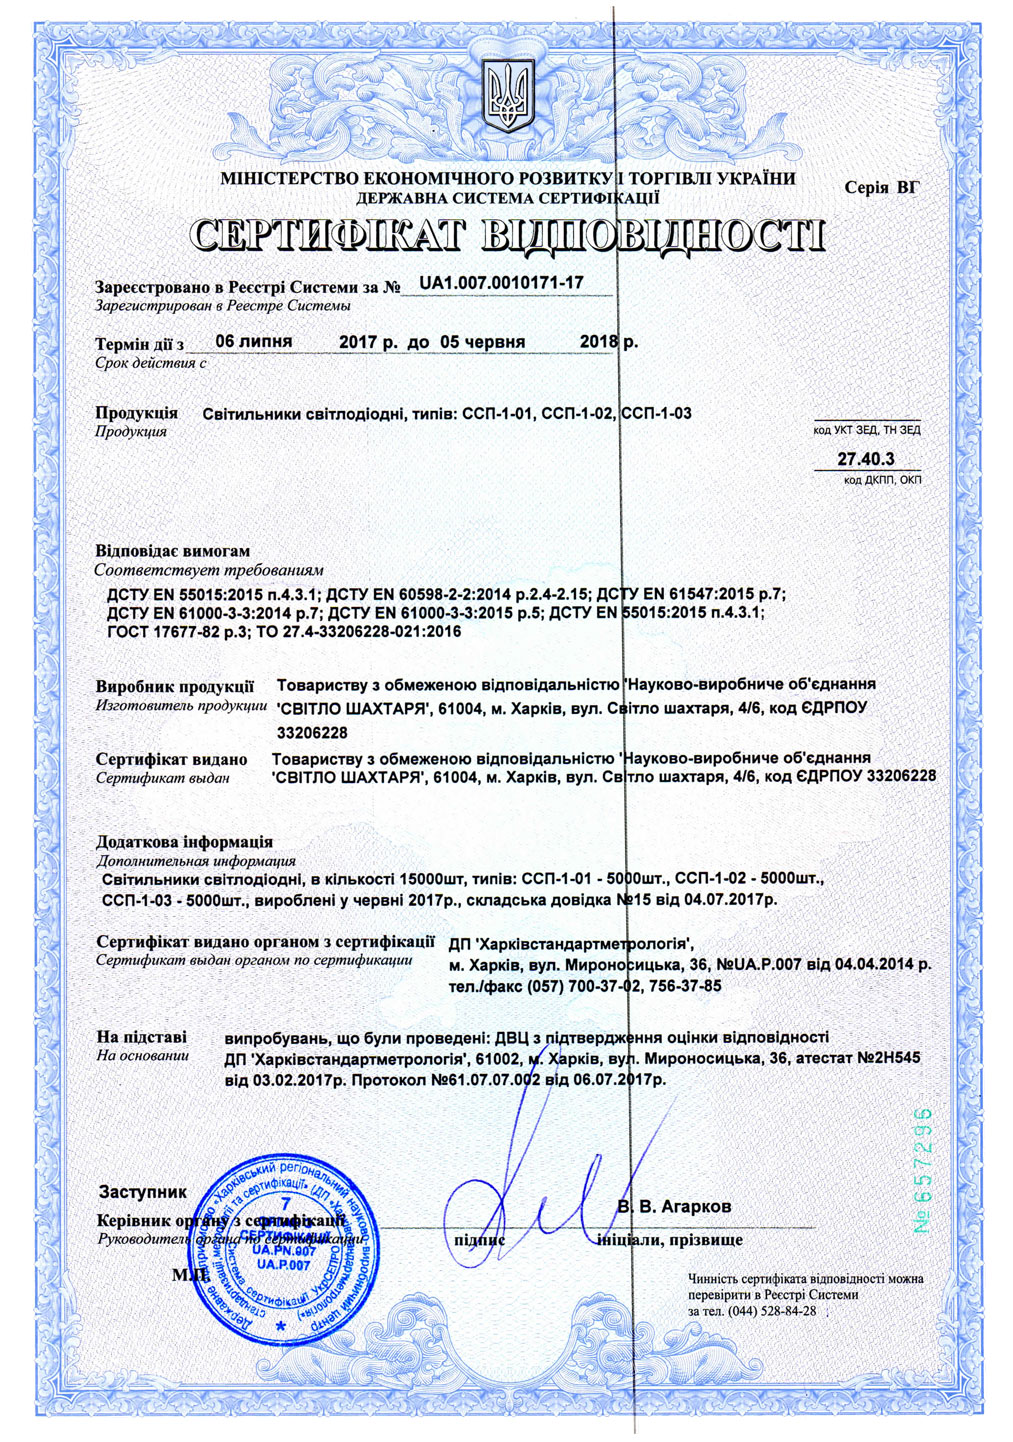 Сертификат светодиодных светильников ССП-1-01, ССП-1-02, ССП-1-03